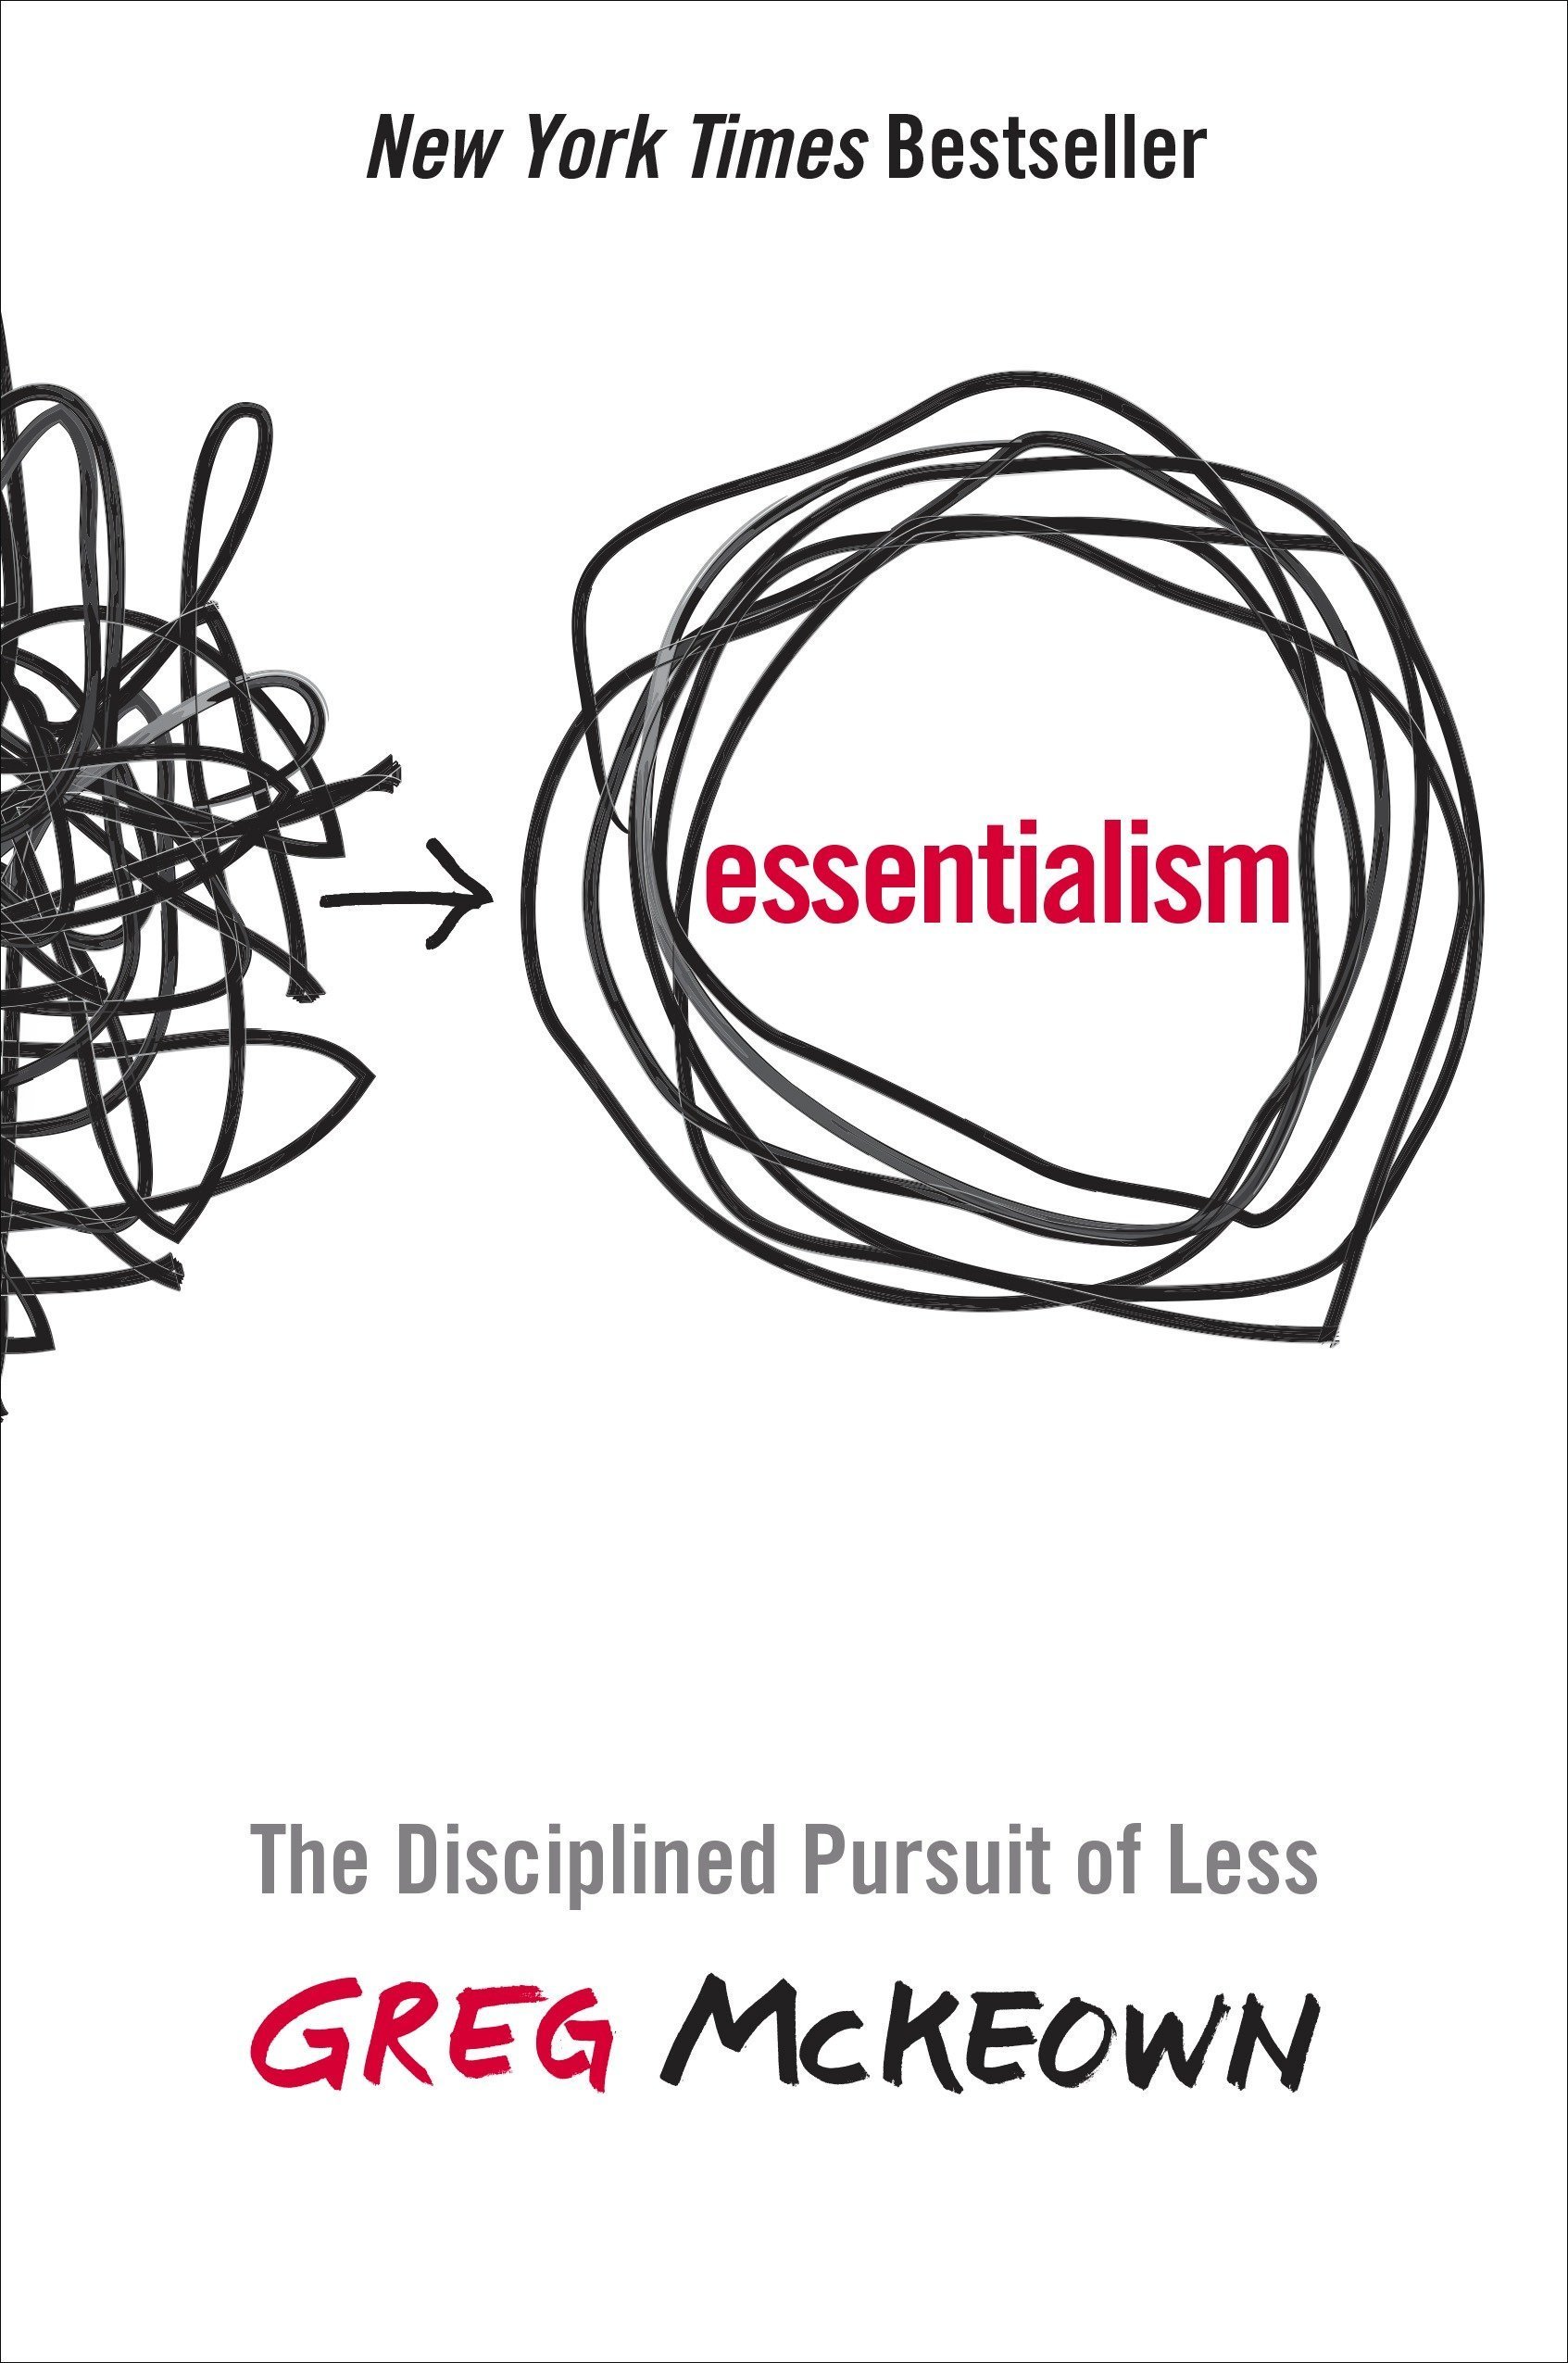 Essentialism by Greg Mckeowan